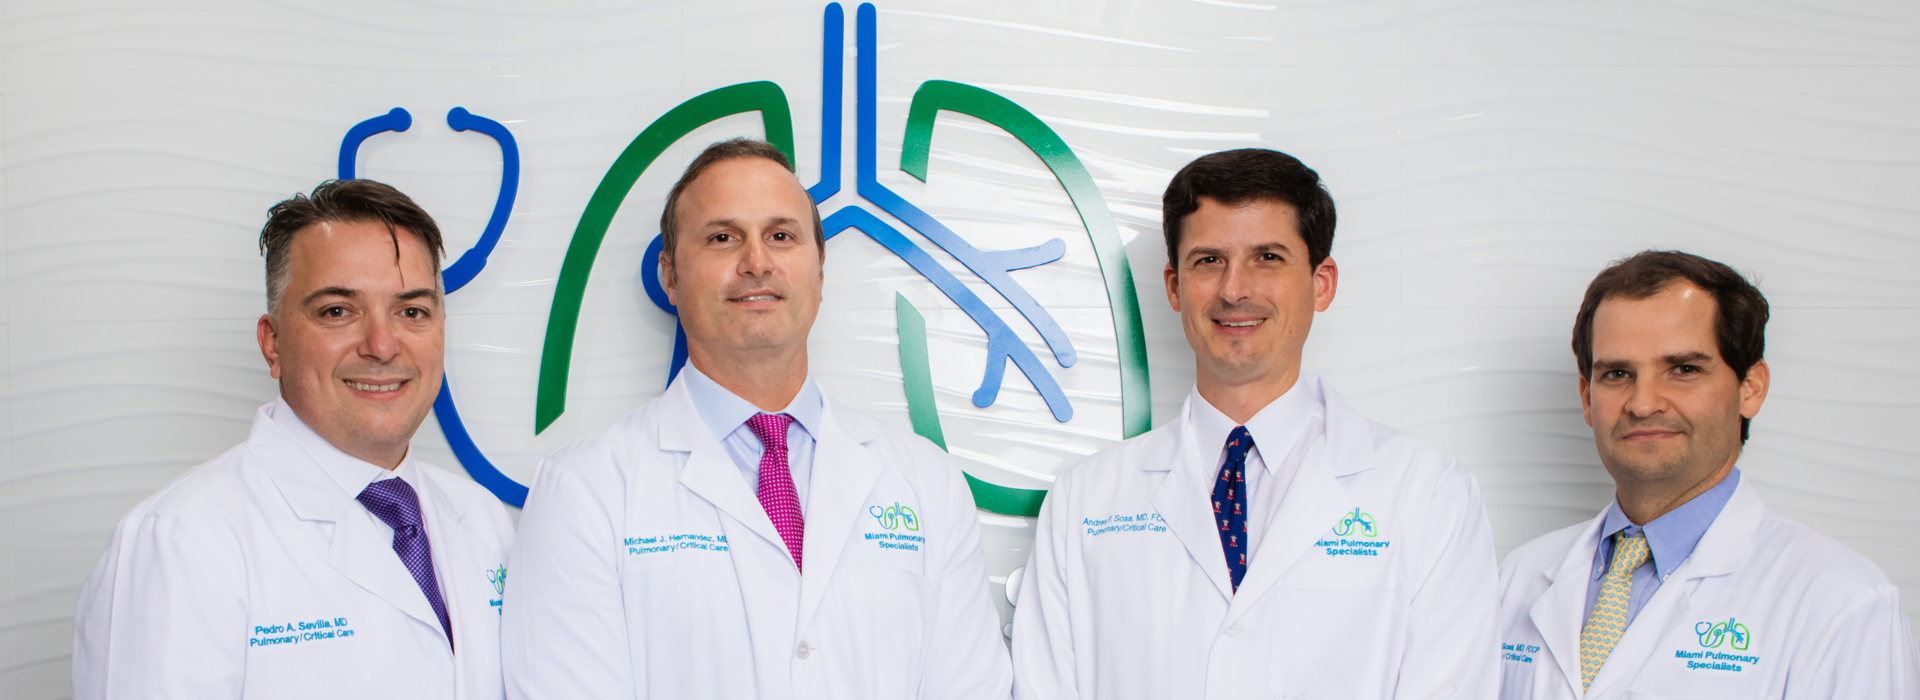 Miami Pulmonary Specialists